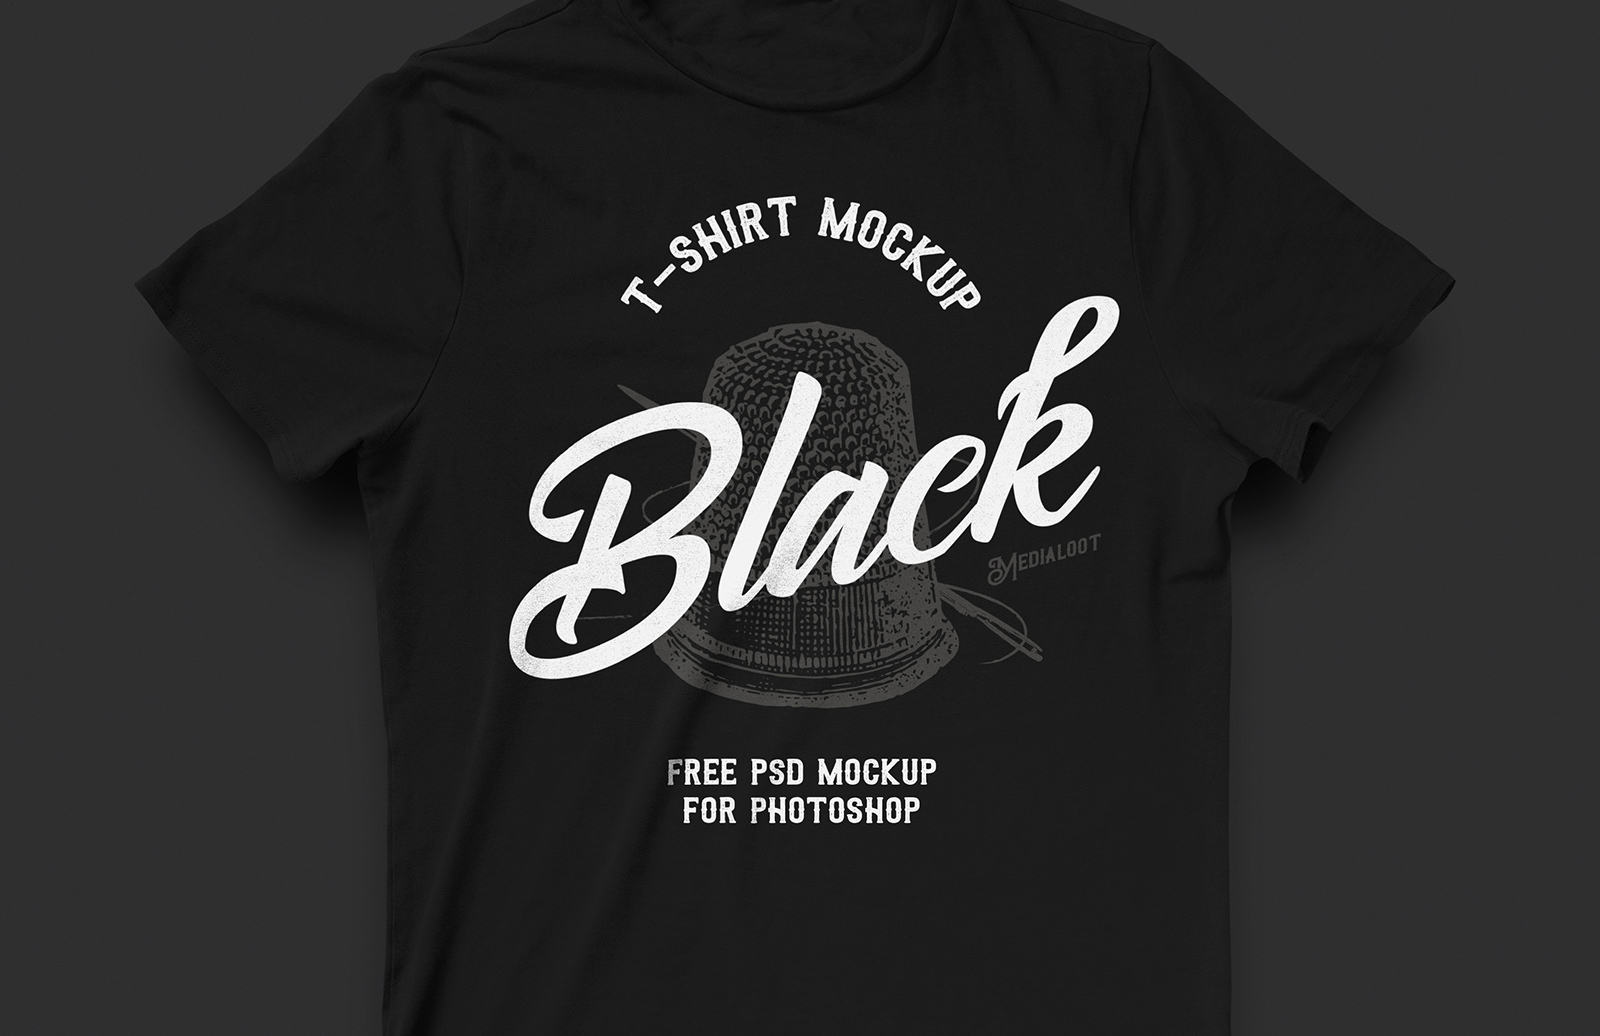 Download Mockup Shirt Free Black - Free T Shirt Mockup Templates ...